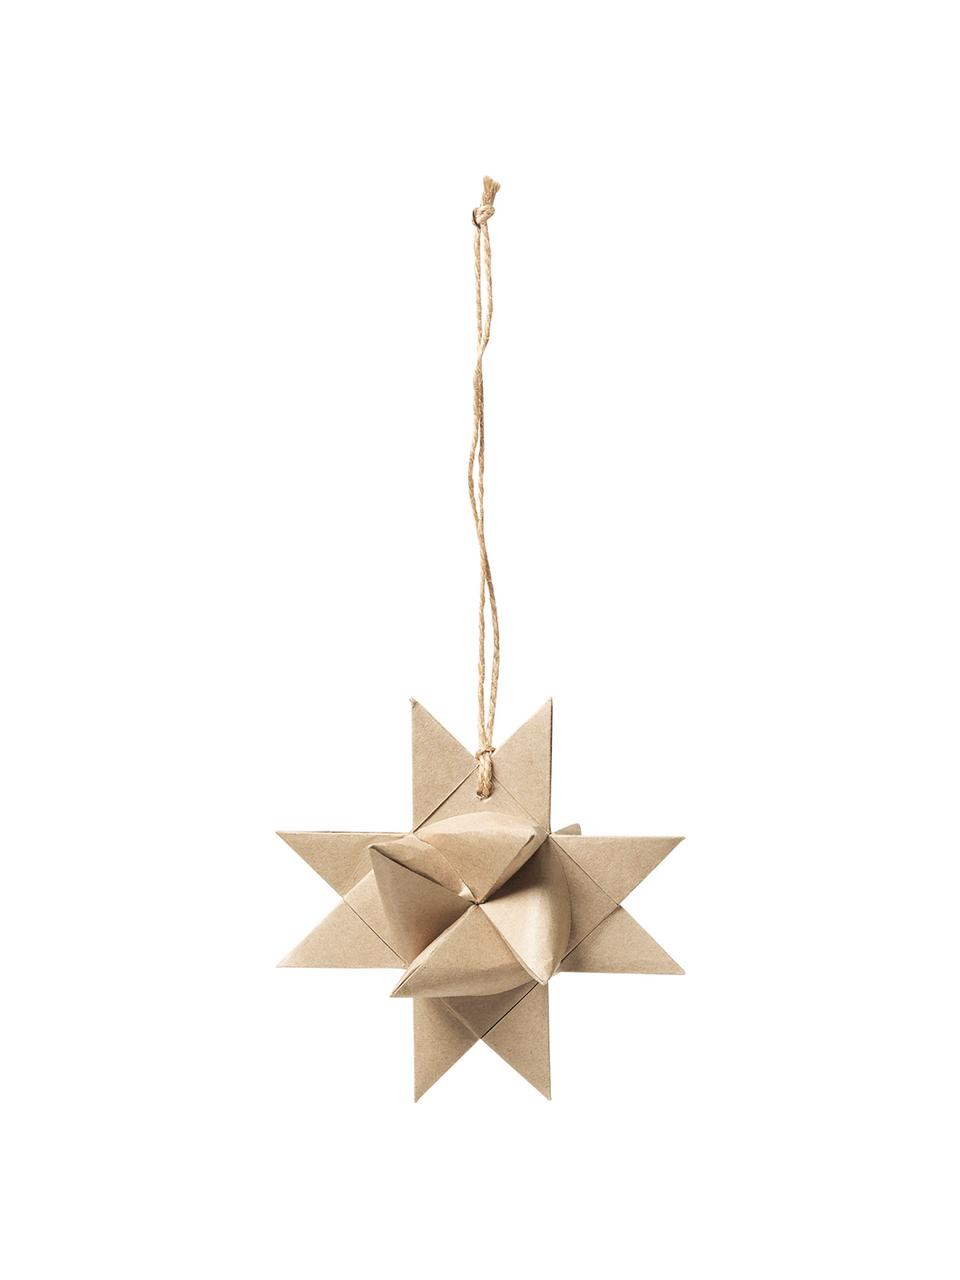 Baumanhänger Star Origami, 4 Stück, Papier, Beige, B 11 x T 11 cm